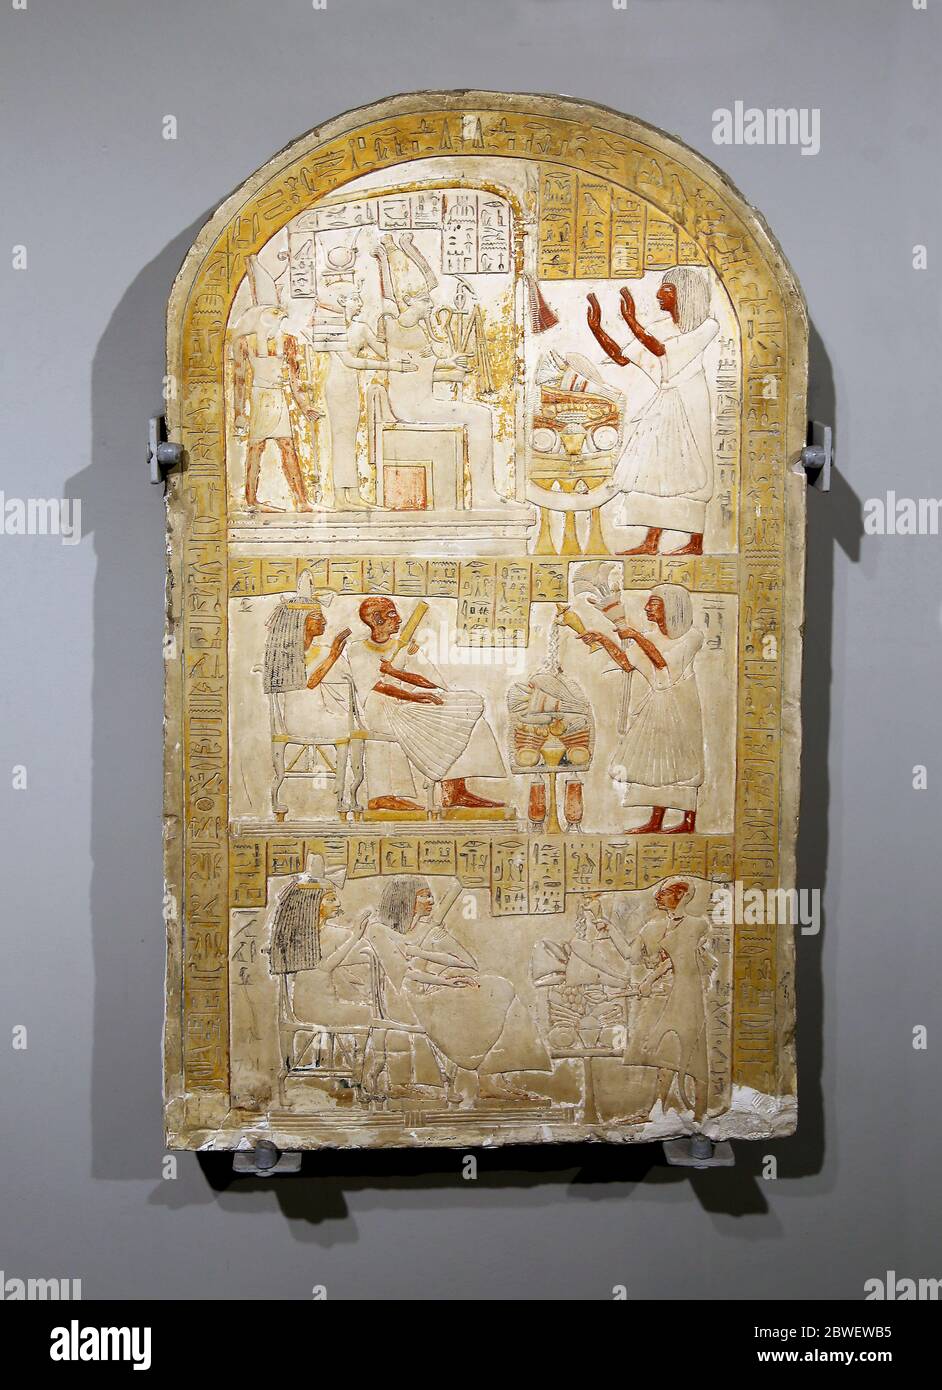 Grabstele von hat seiner Familie gewidmet. Kalkstein. (1440-1390 v. Chr.) Neues Königreich, ägyptische Sammlung. Archäologisches Museum von Neapel. Stockfoto